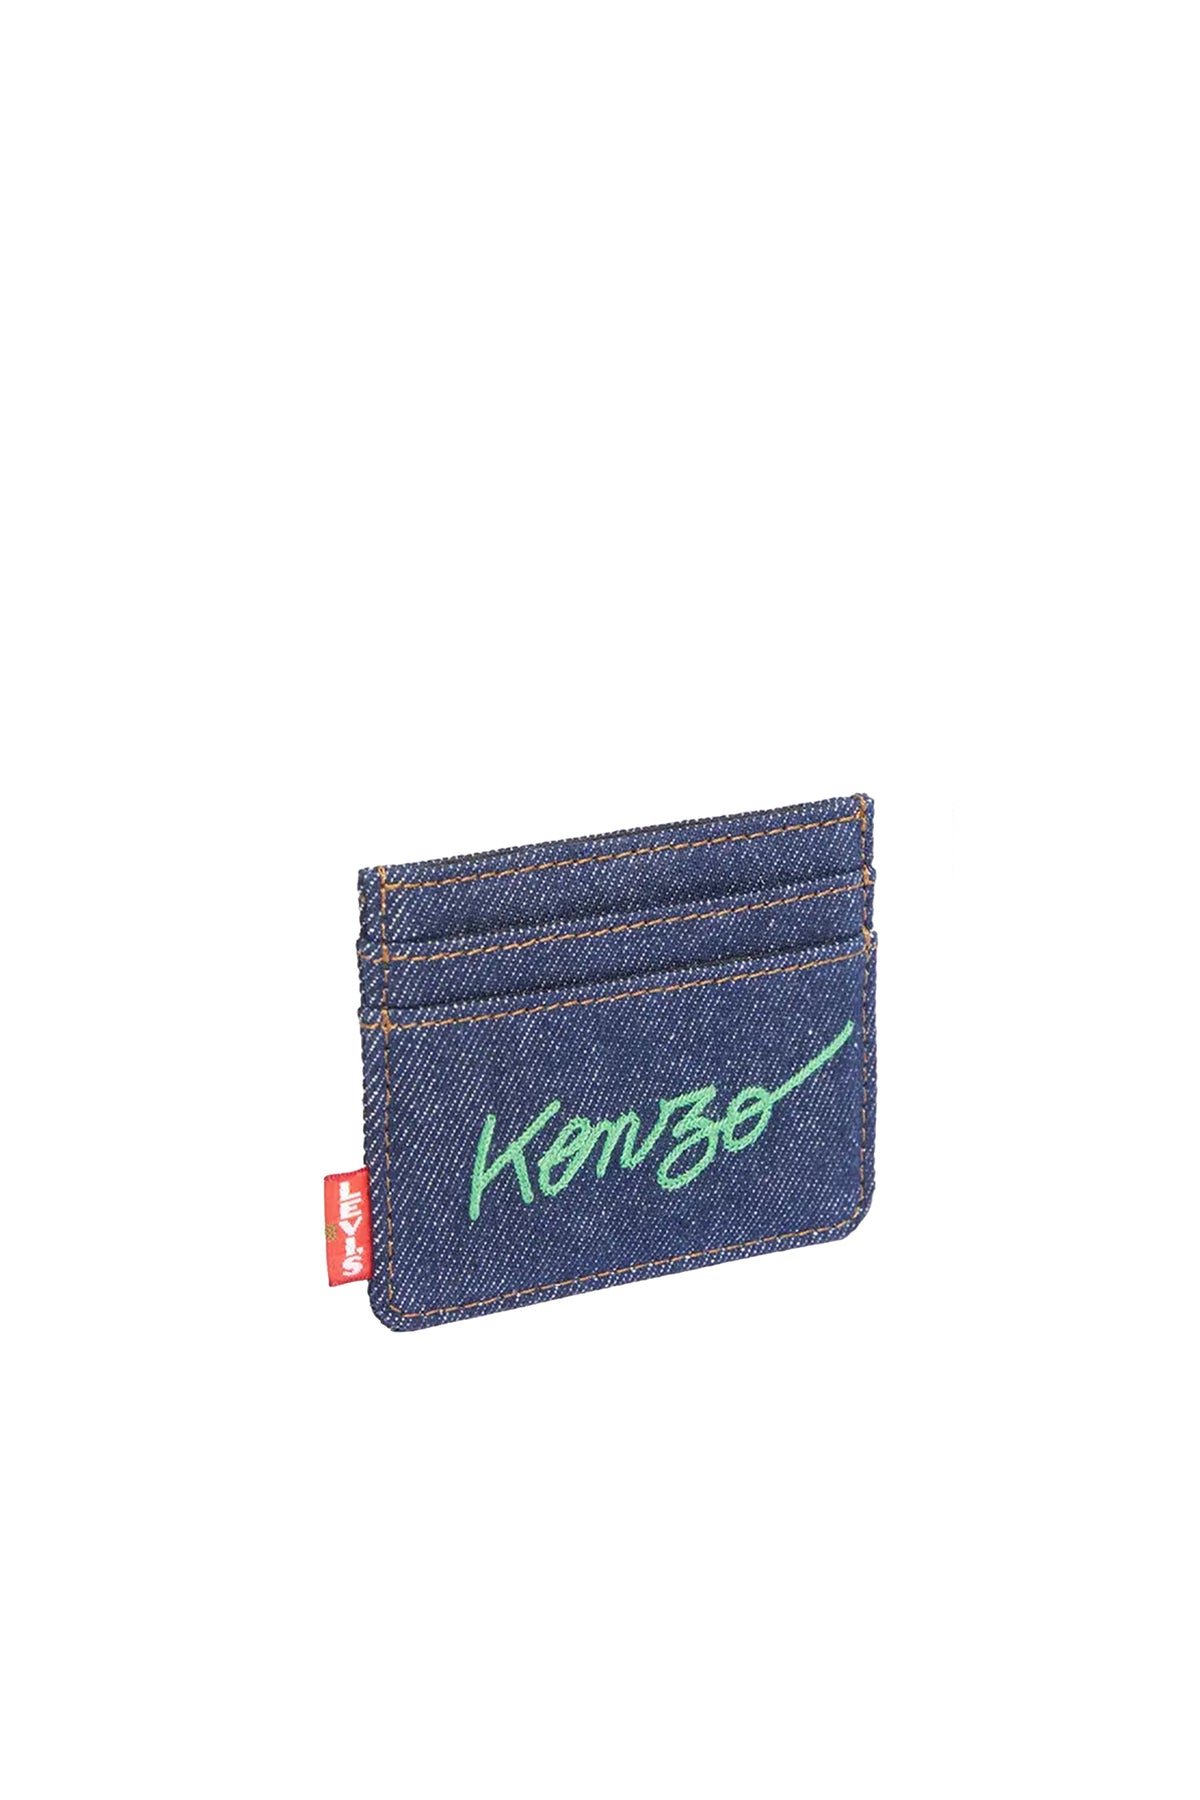 KENZO LEVI'S CARD HOLDER / DM - RINSE BLUE DENIM